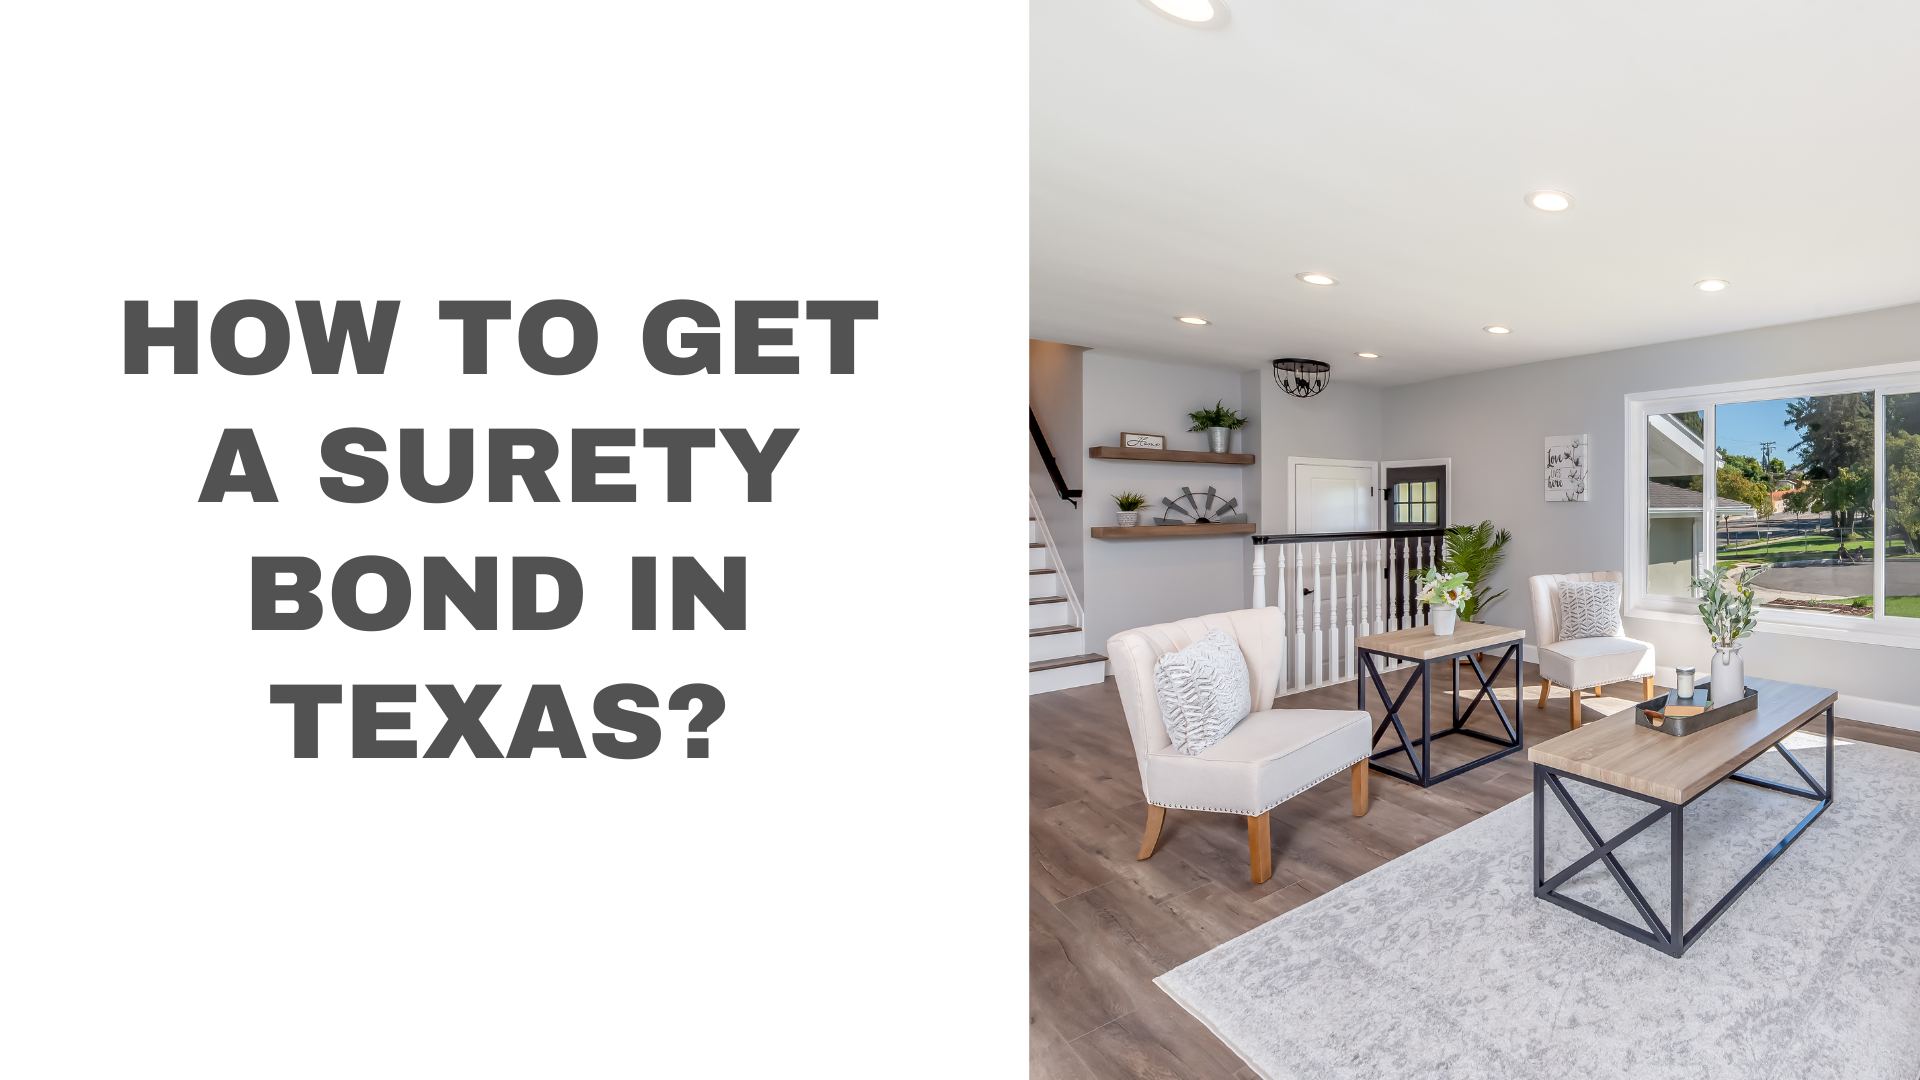 surety bond - How To Get A Surety Bond In Texas - modern minimalist home